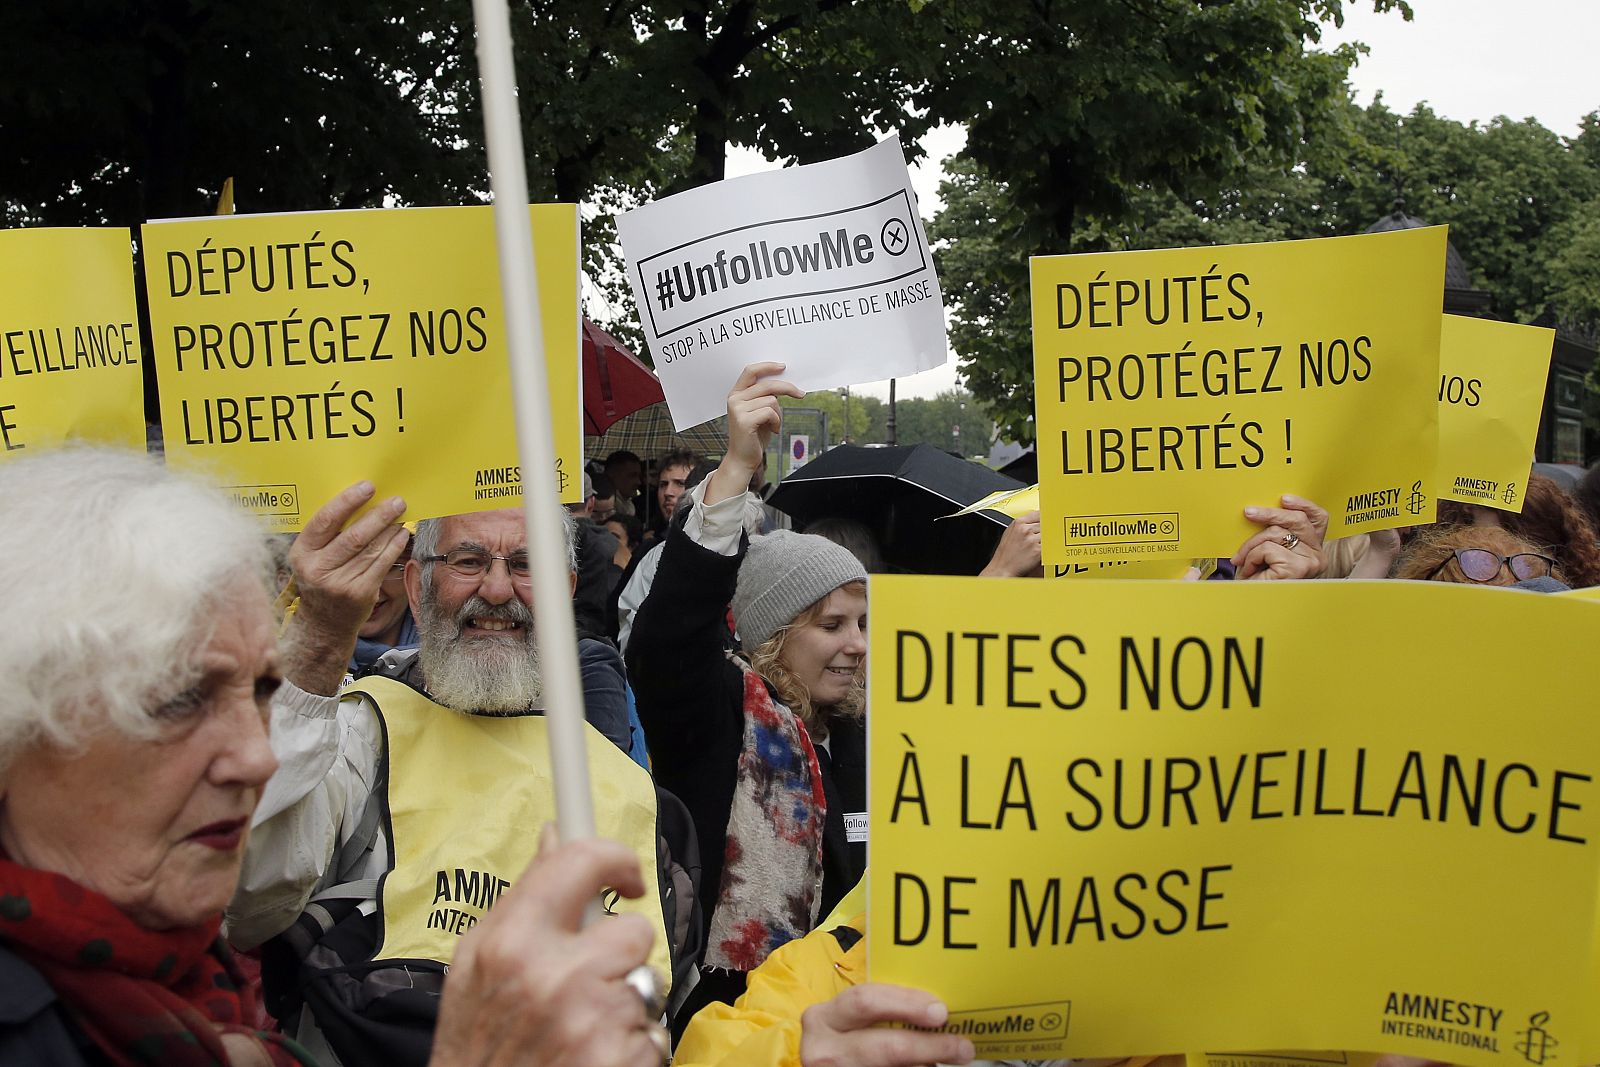 "No a la vigilancia masiva" se lee en las pancartas de este grupo de manifestantes en París.